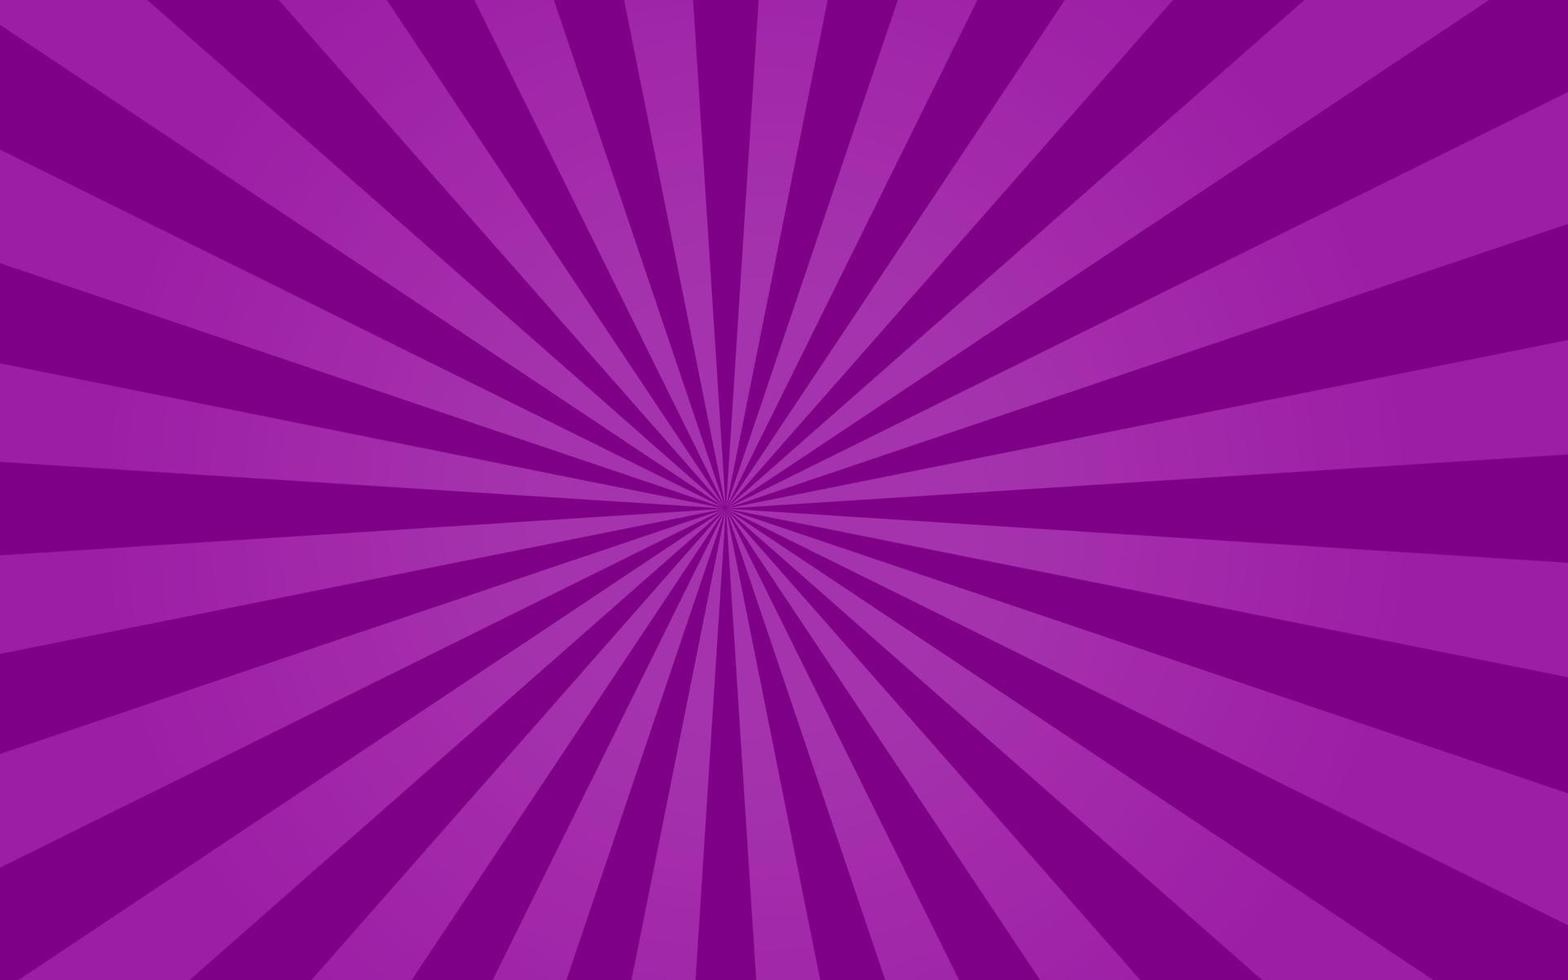 rayos de sol estilo retro vintage sobre fondo púrpura, fondo de patrón de rayos de sol. rayos ilustración de vector de banner de verano